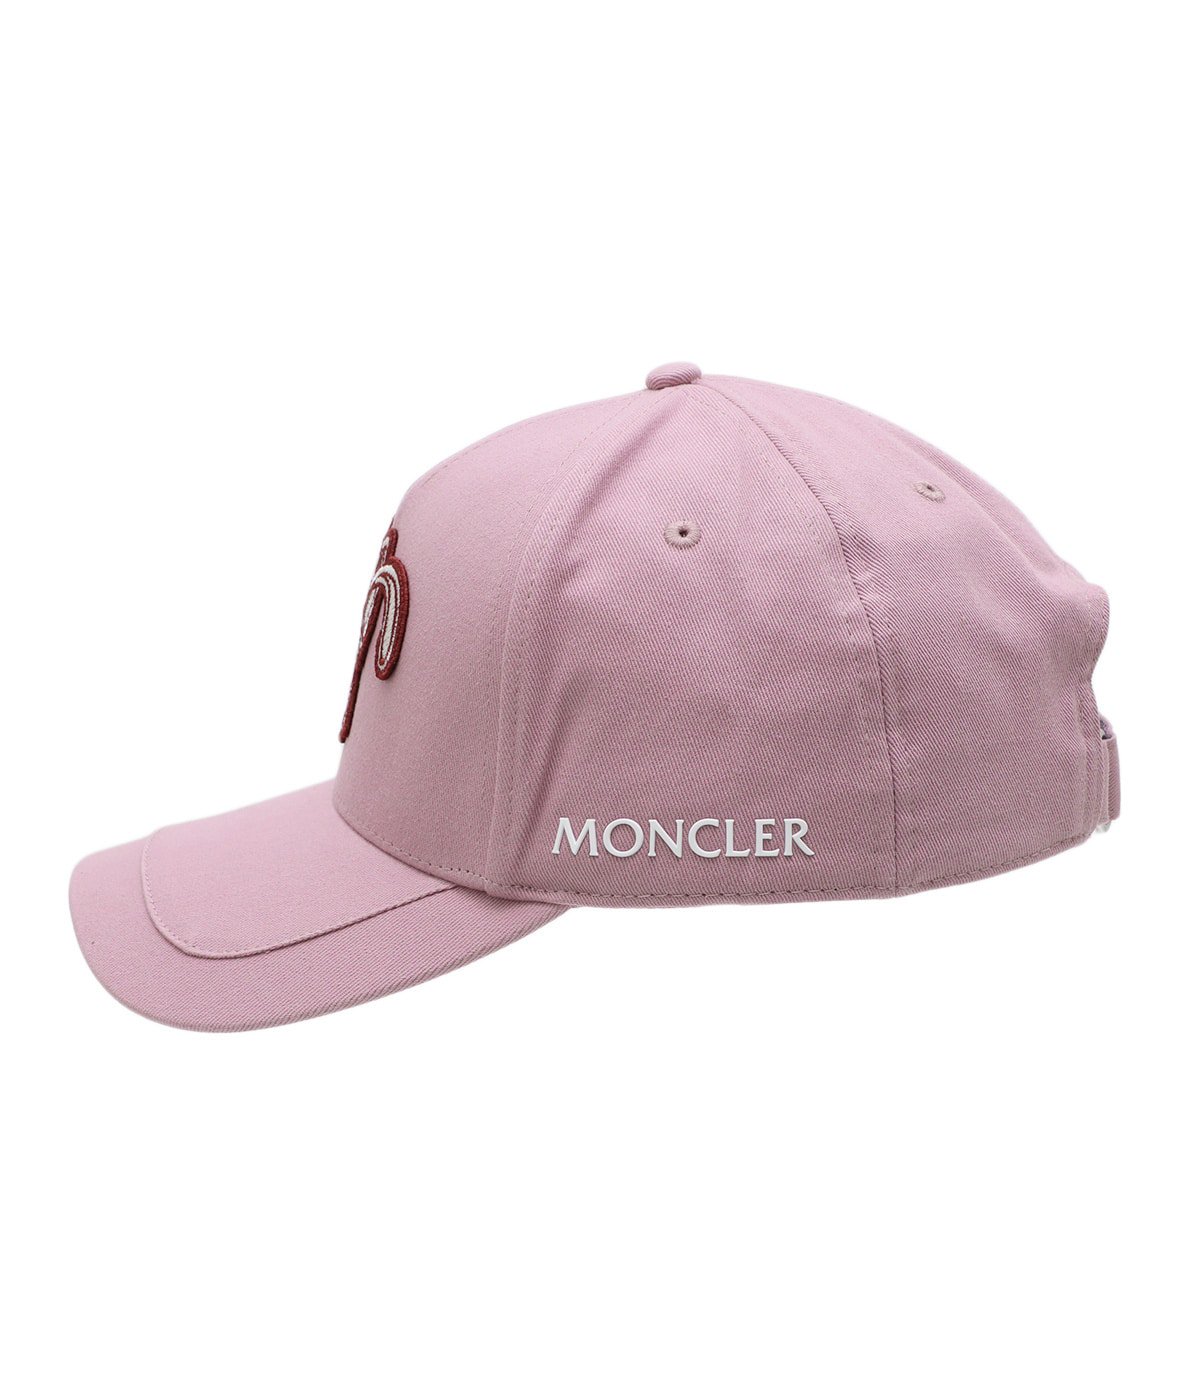 レディース】BASEBALL CAP | MONCLER(モンクレール) / 帽子 キャップ 